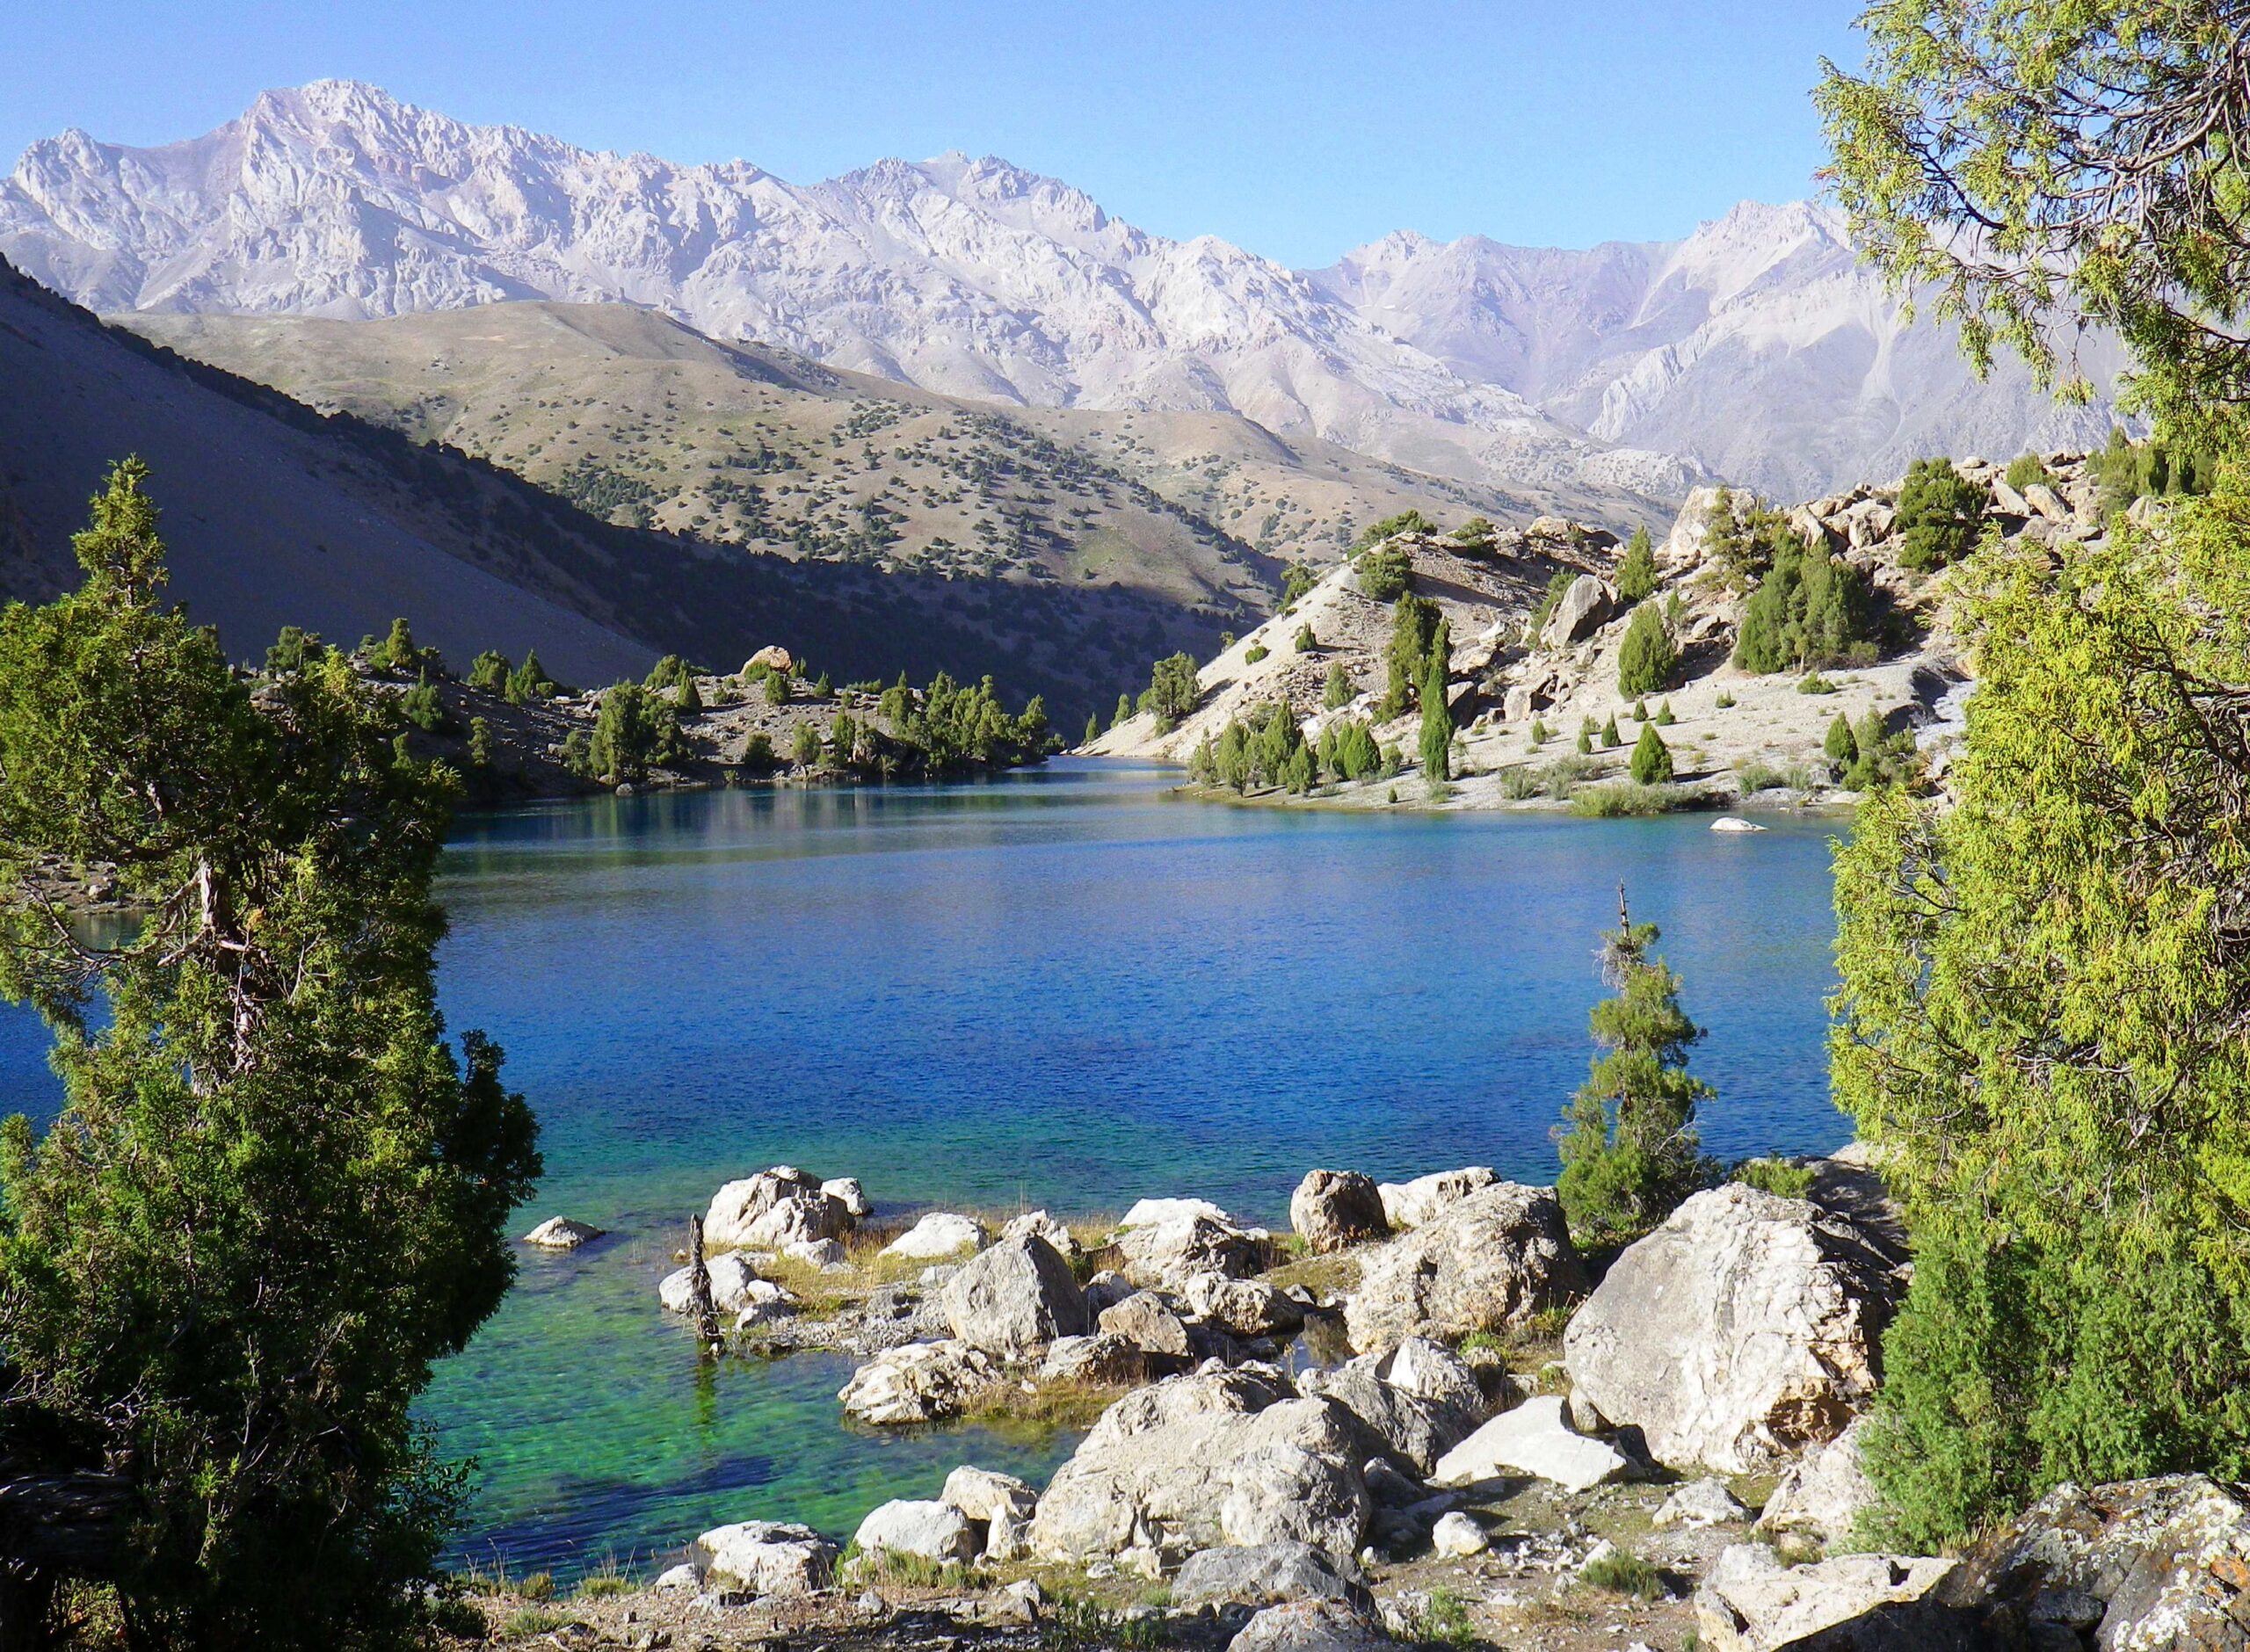 Tajikistan

“Exploring Tajikistan: Top 10 Travel Destinations